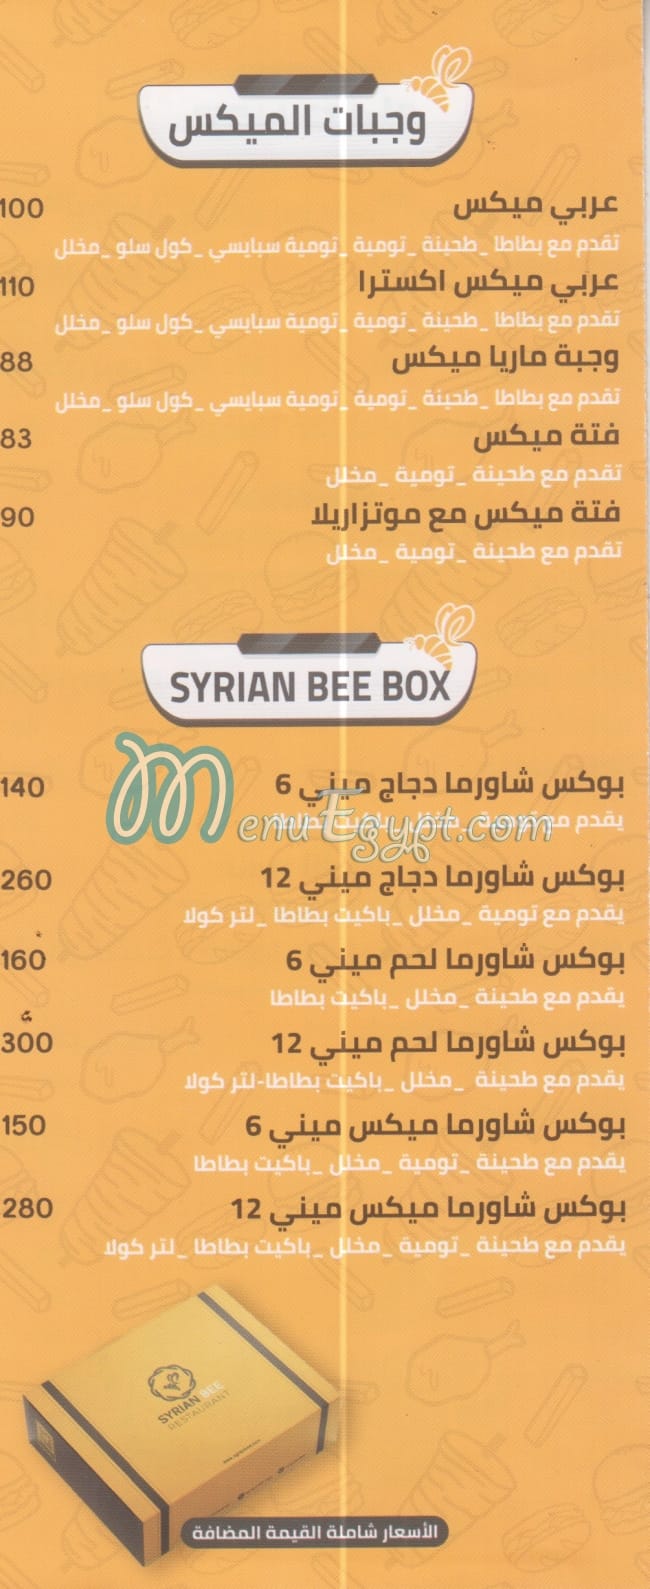 Syrian Bee online menu